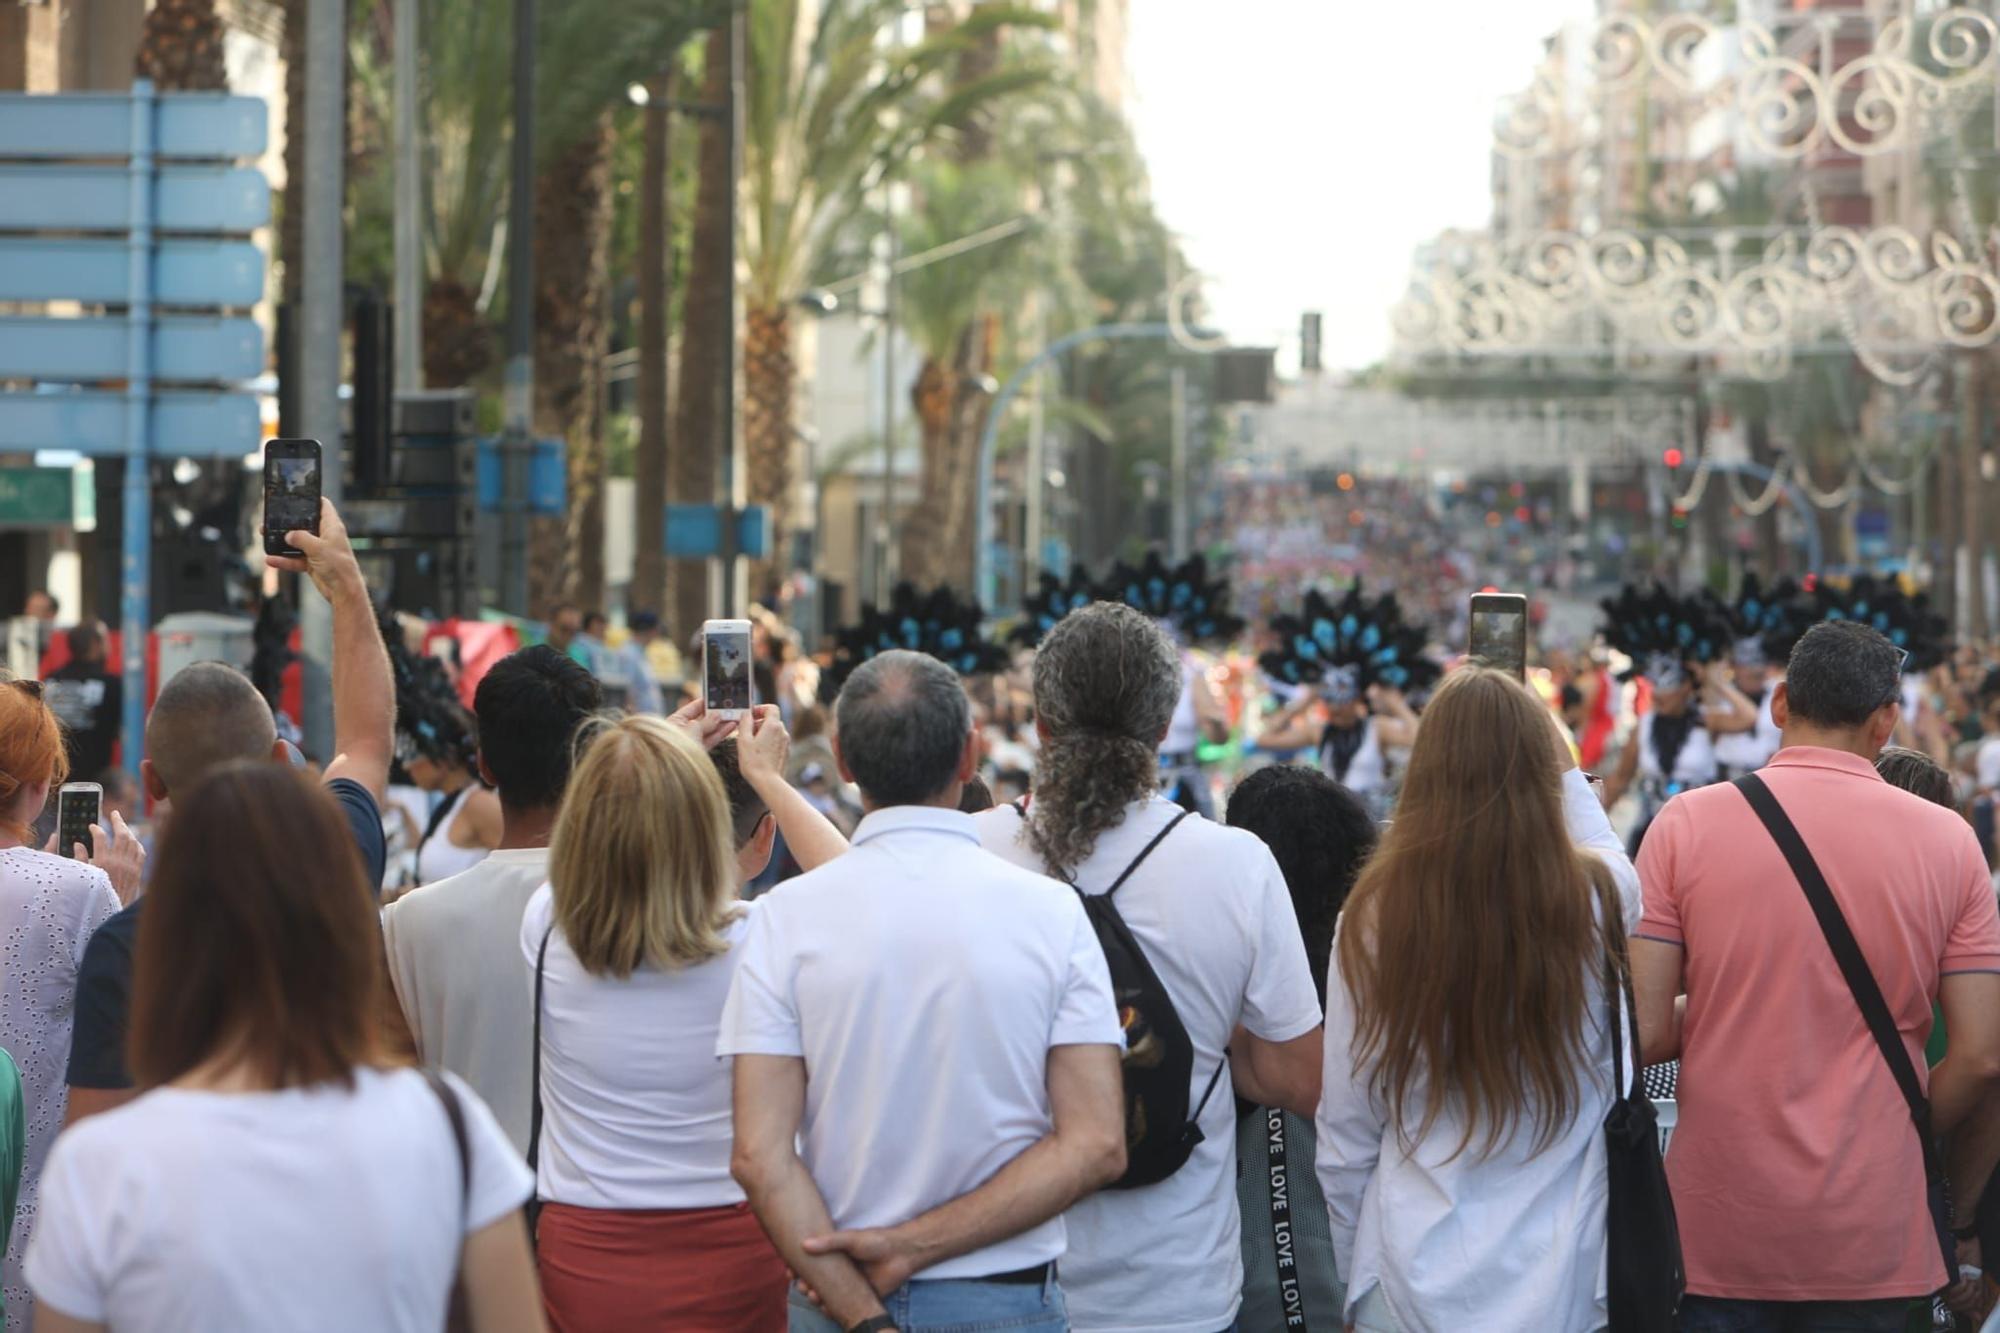 Las 89 hogueras y 20 barracas inundan las calles de Alicante con el tradicional desfile del Ninot